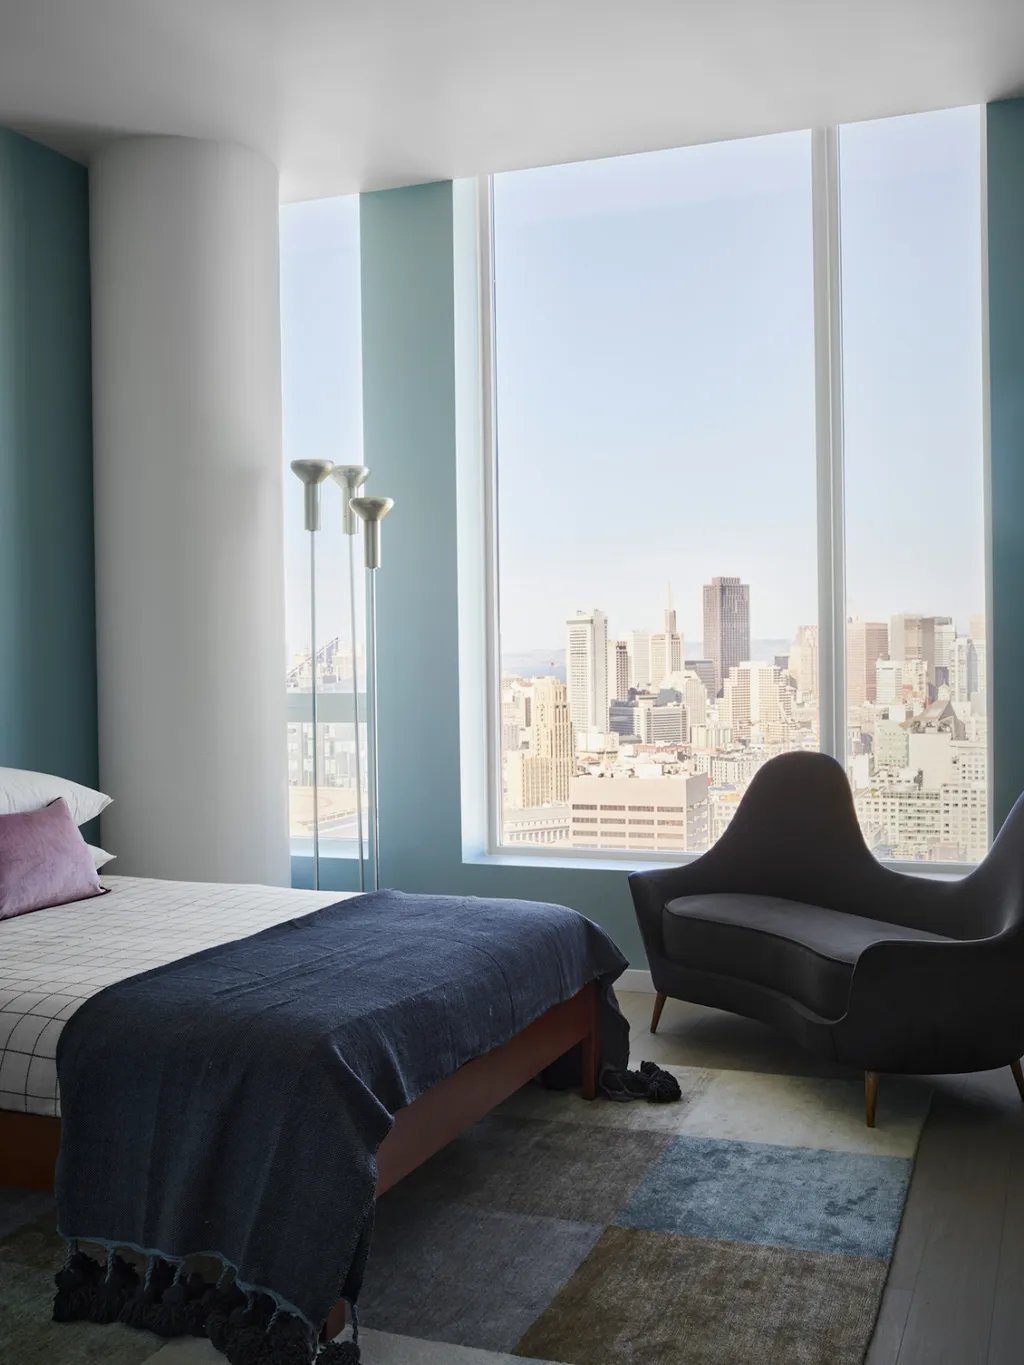 Phòng ngủ hướng cửa sổ lớn đang là thiết kế rất thịnh hành tại các căn hộ chung cư